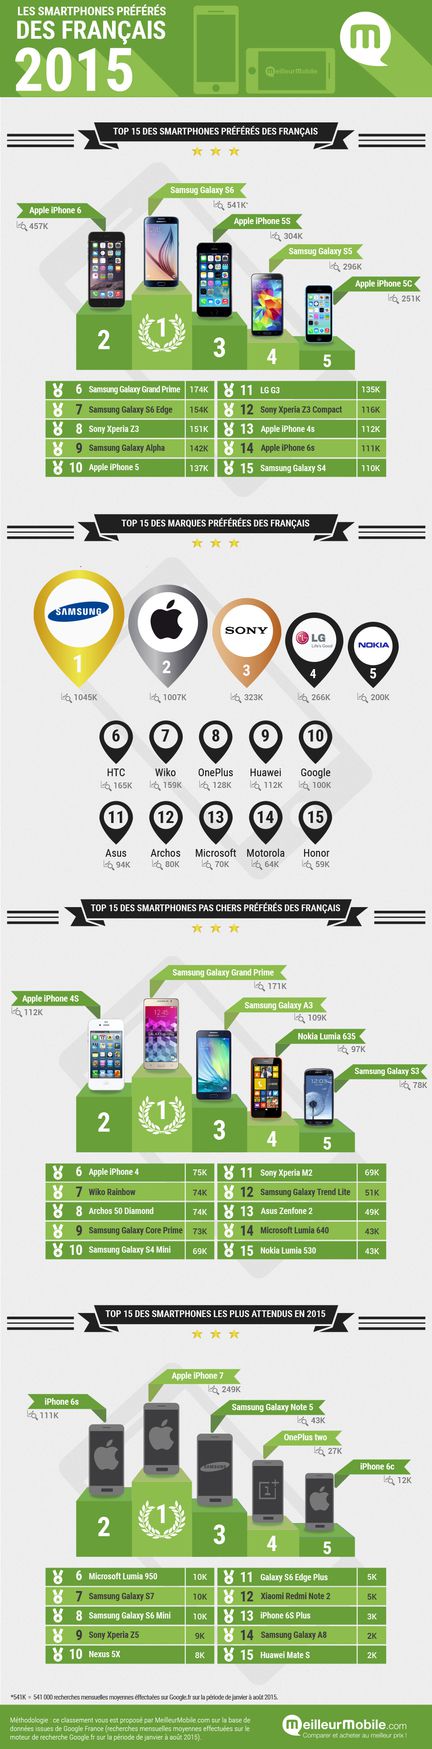 Infographie smartphones France 2015